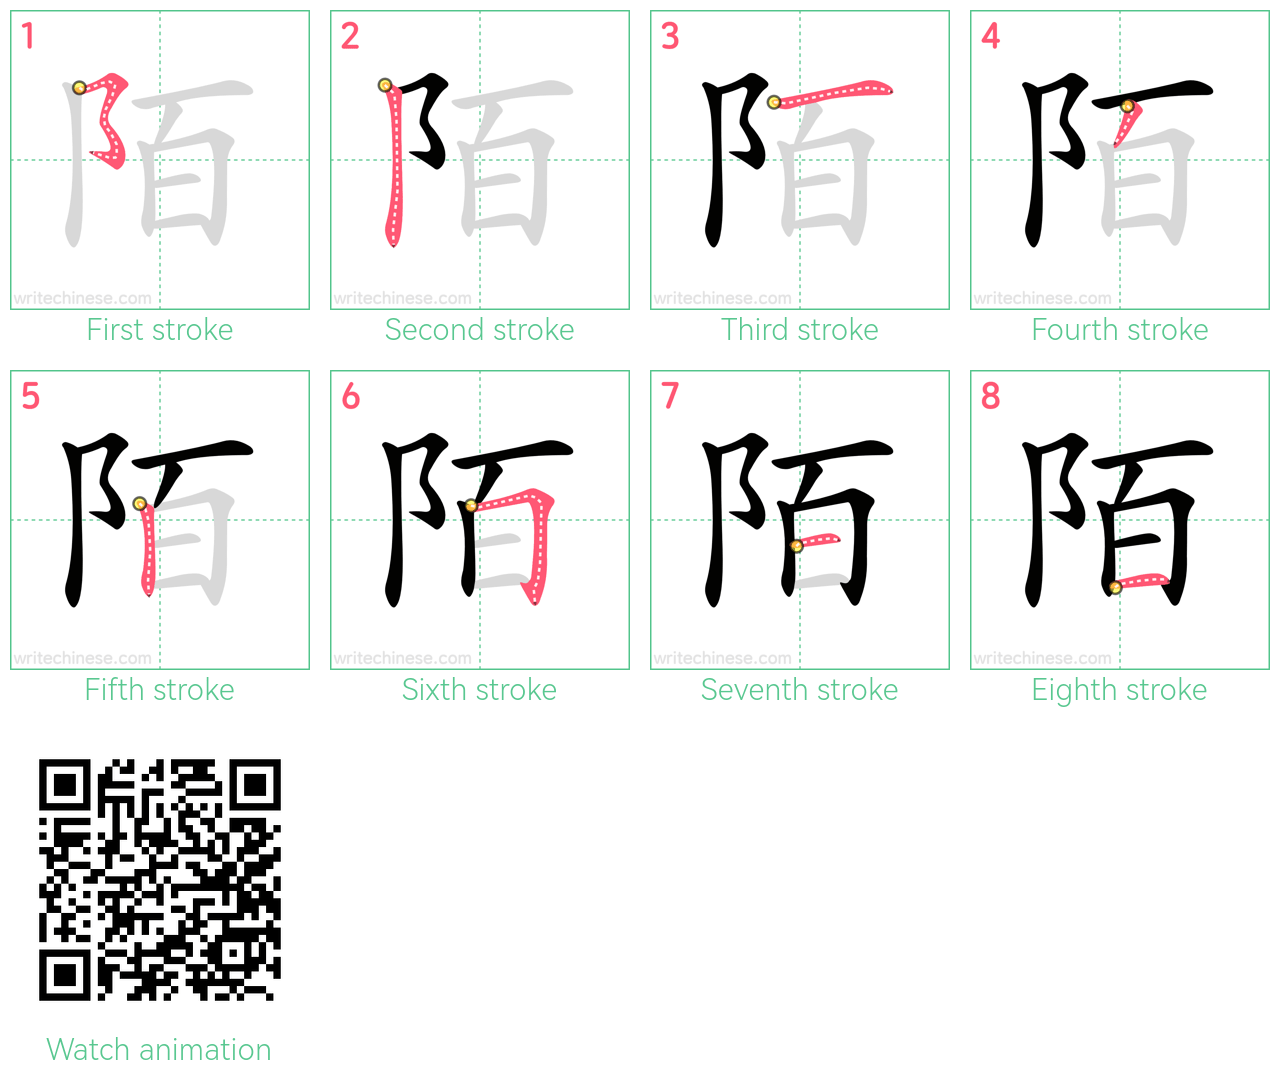 陌 step-by-step stroke order diagrams